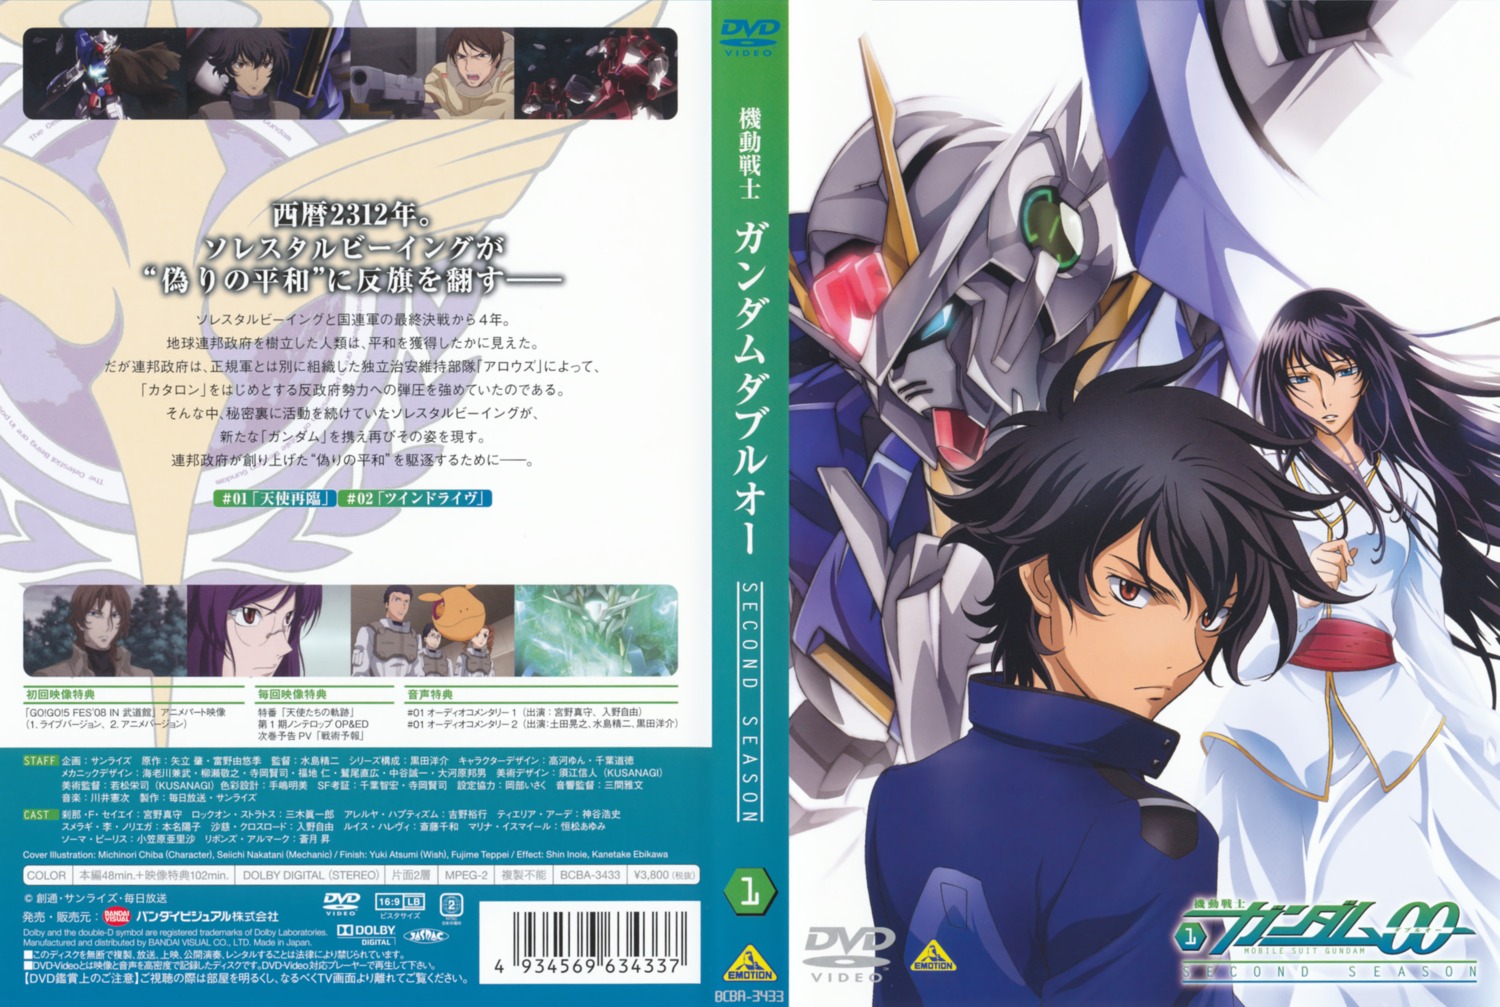 Chiba Michinori Nakatani Seiichi Gundam Gundam 00 Marina Ismail Setsuna F Seiei Disc Cover Mecha 635 Yande Re